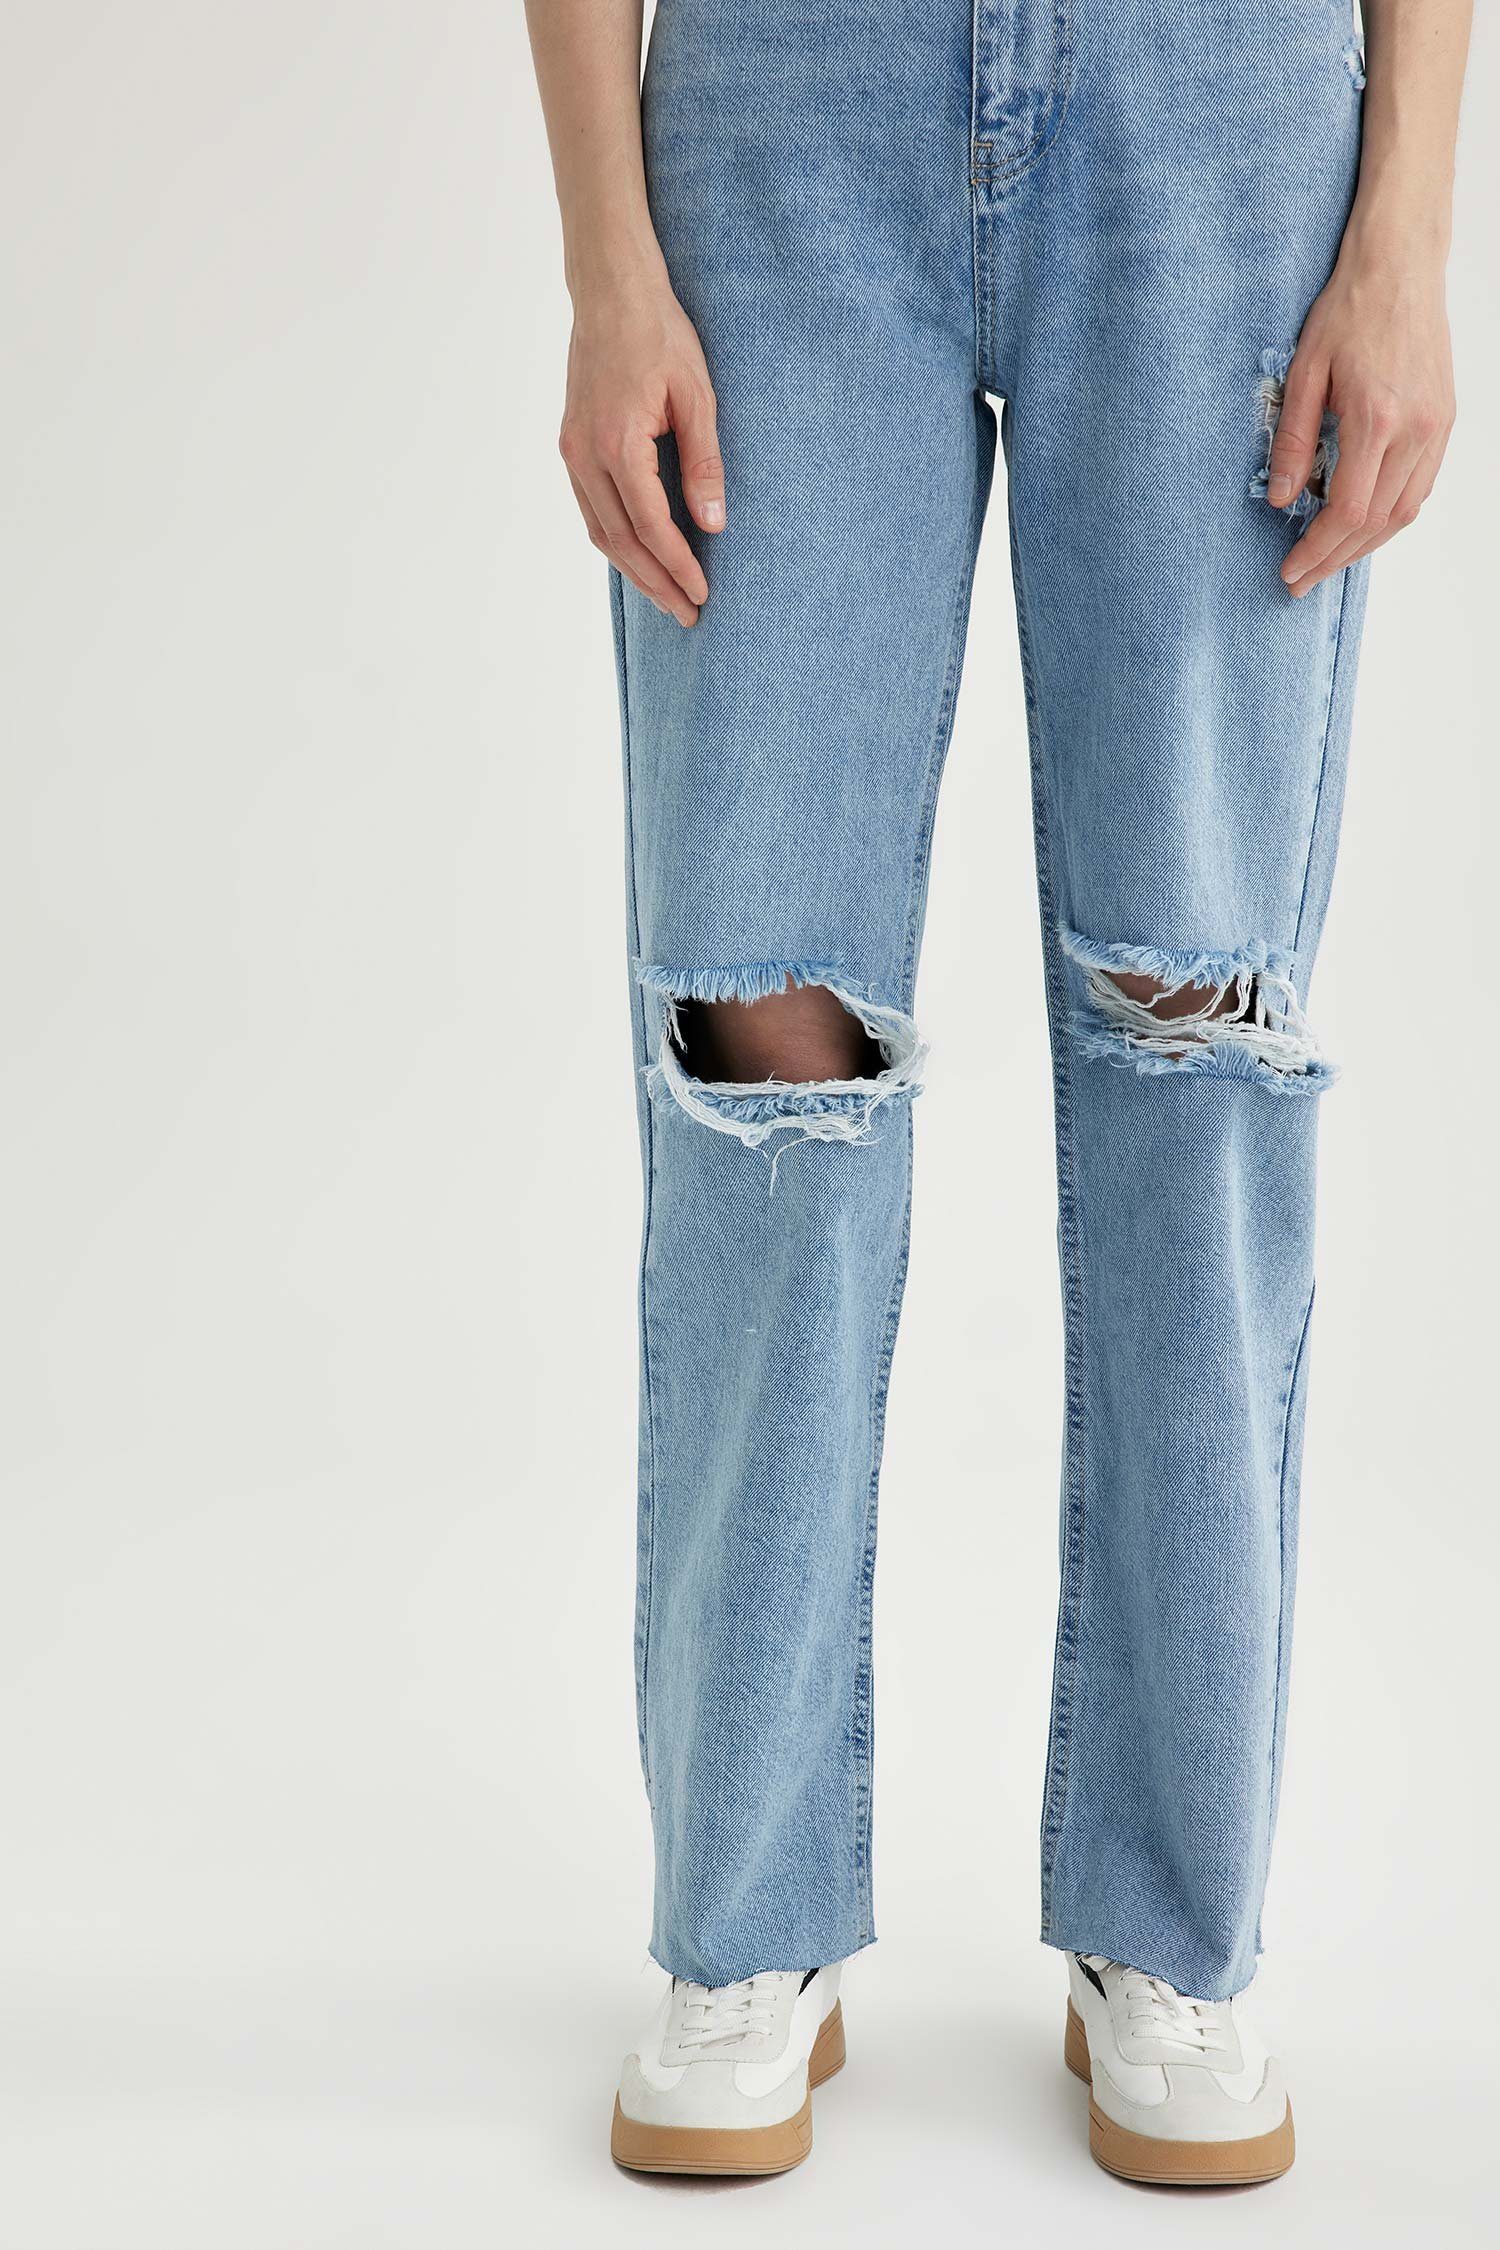 Jeans Damen Weite LEG WIDE 90'S Weite DeFacto Jeans